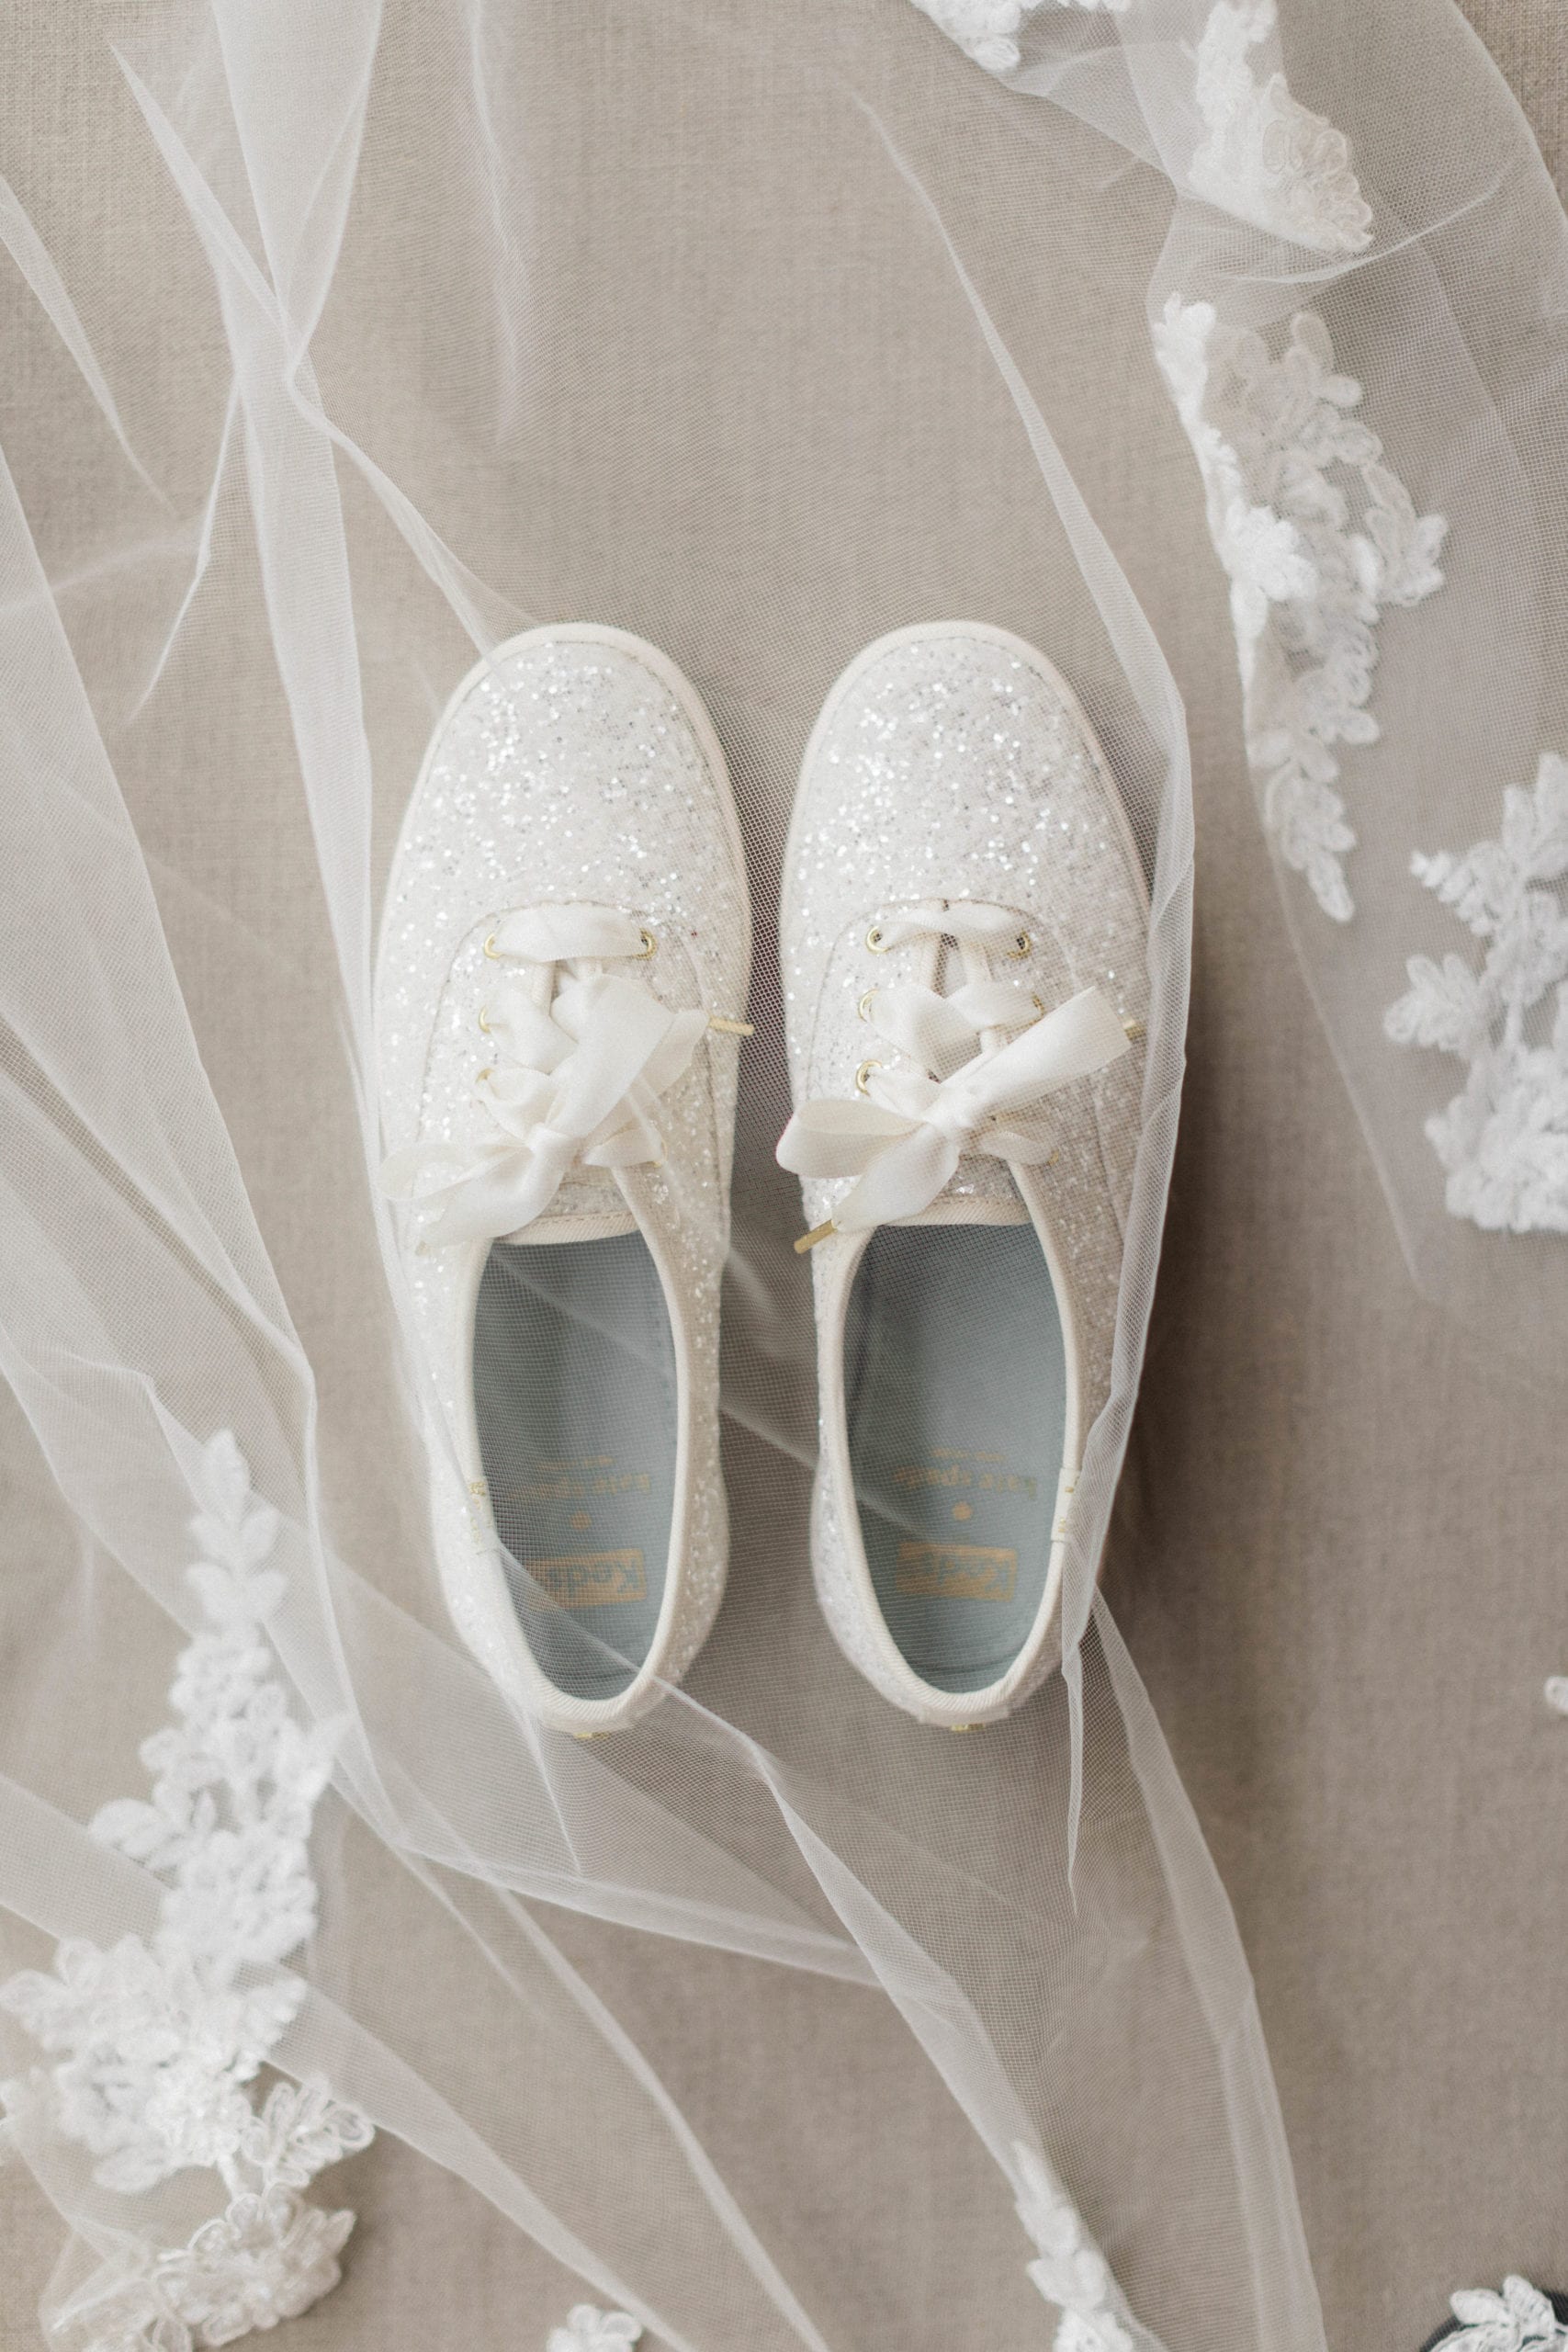 wedding shoes detail shot at Pascagoula River Audubon Center Wedding Venue